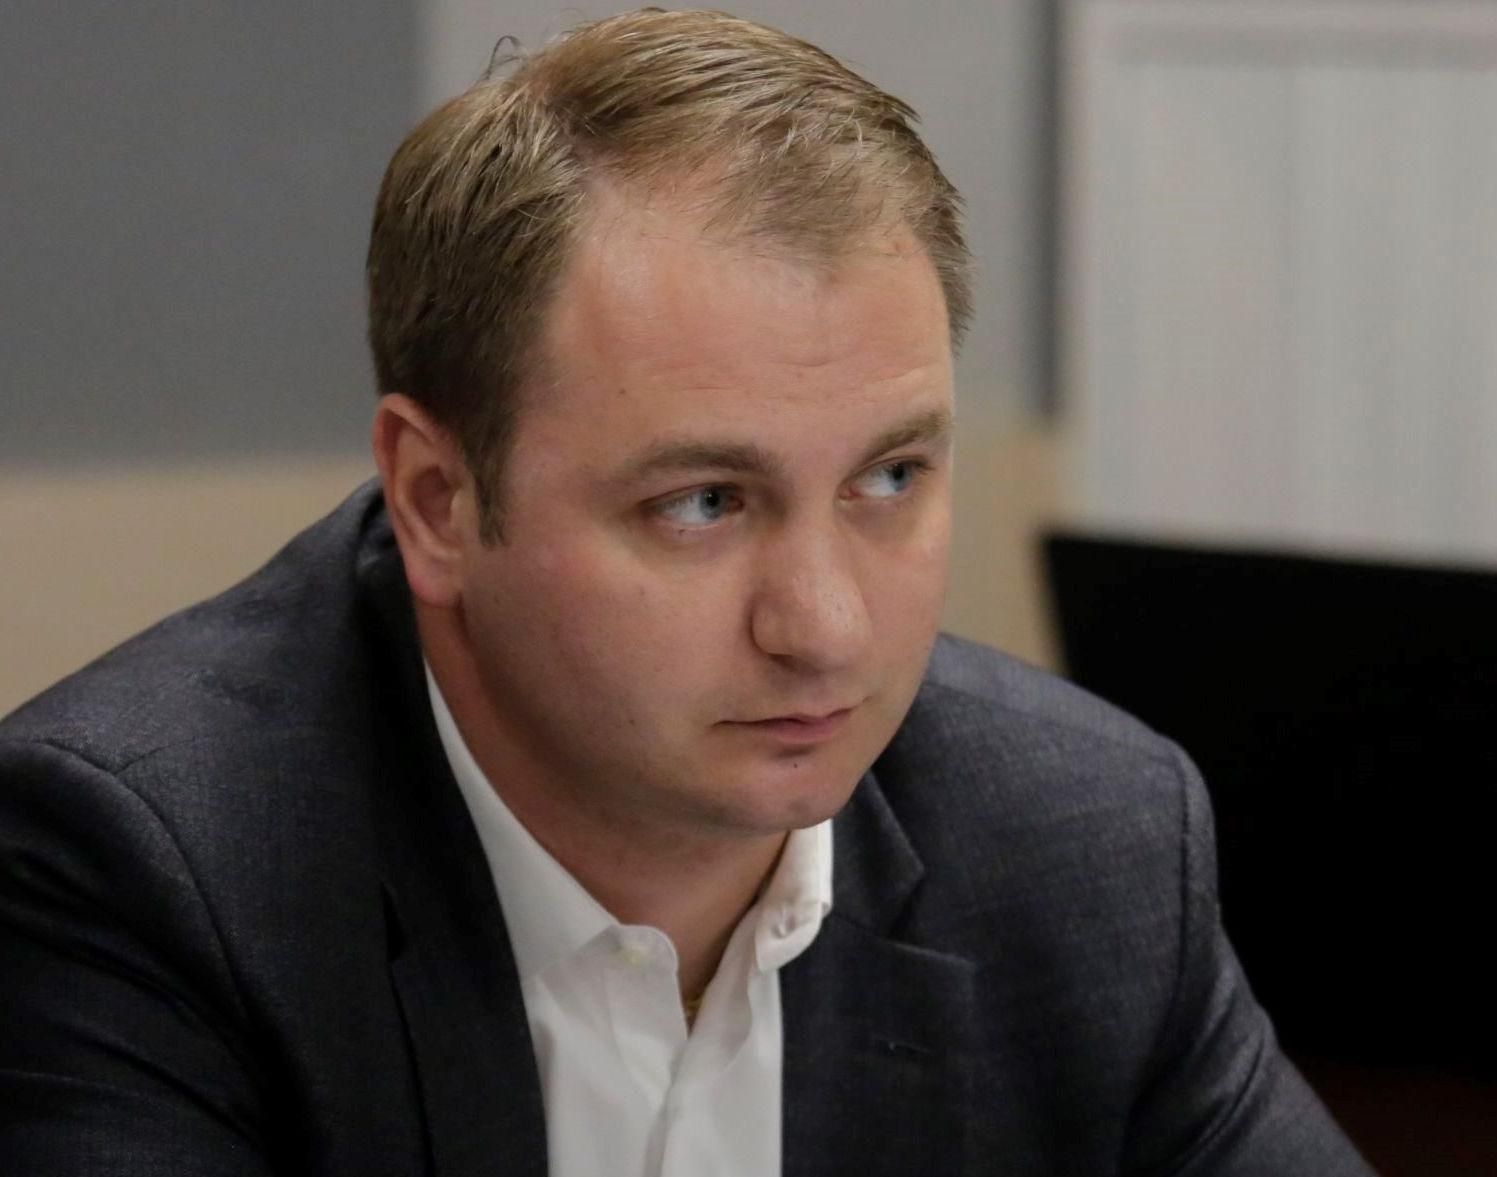 Депутат МГД Кирилл Щитов оценил предложения об оборудовании автомобилей алкозамками